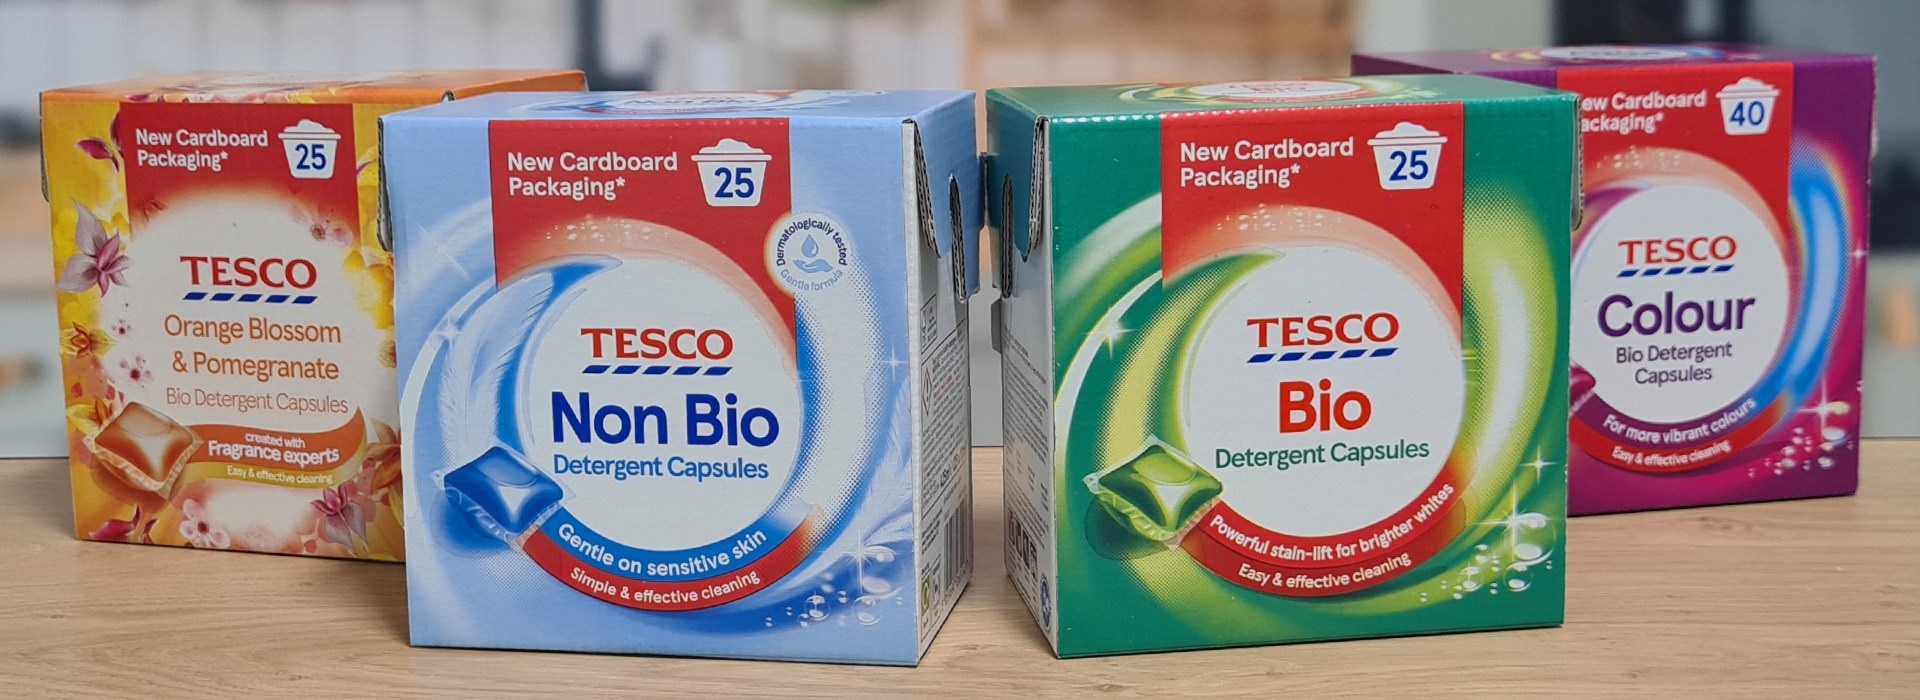 Tesco вводит в ассортимент картонные коробки для капсул со стиральным порошком